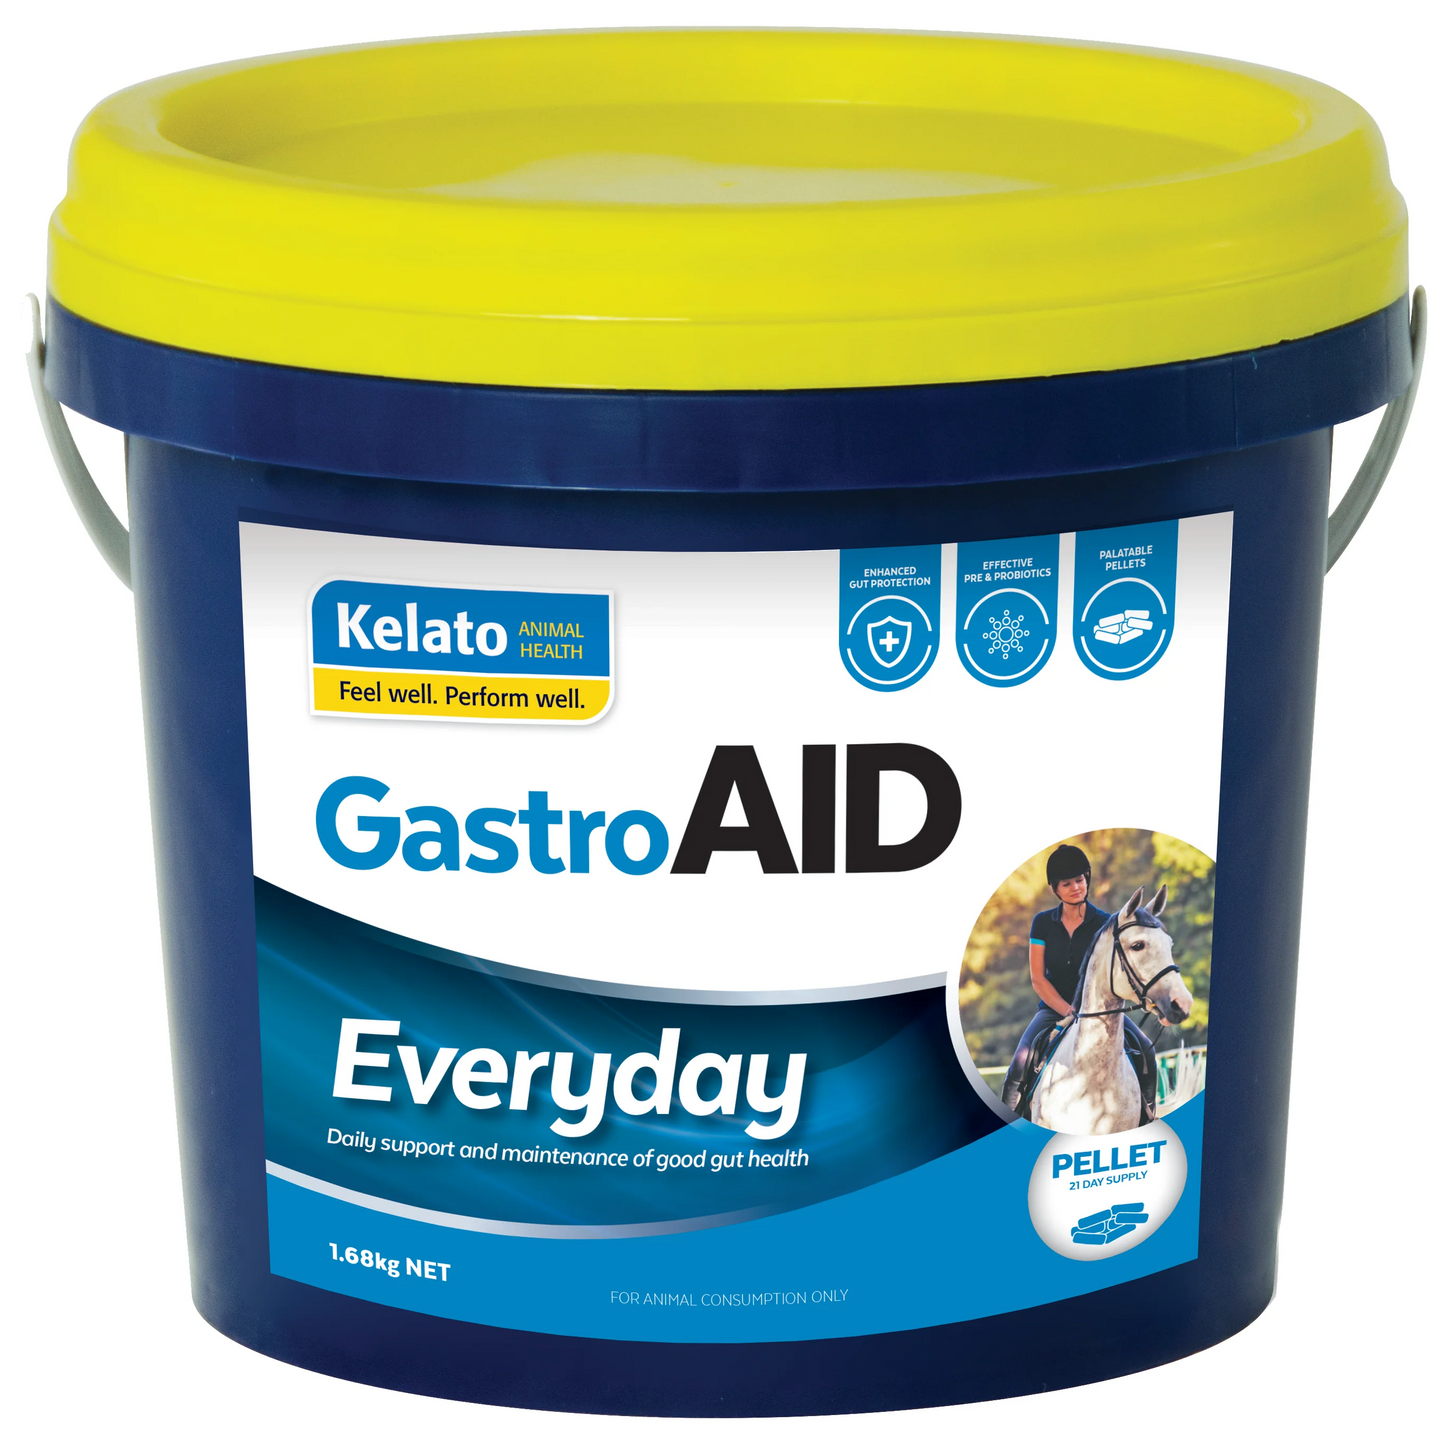 GastroAID Everyday